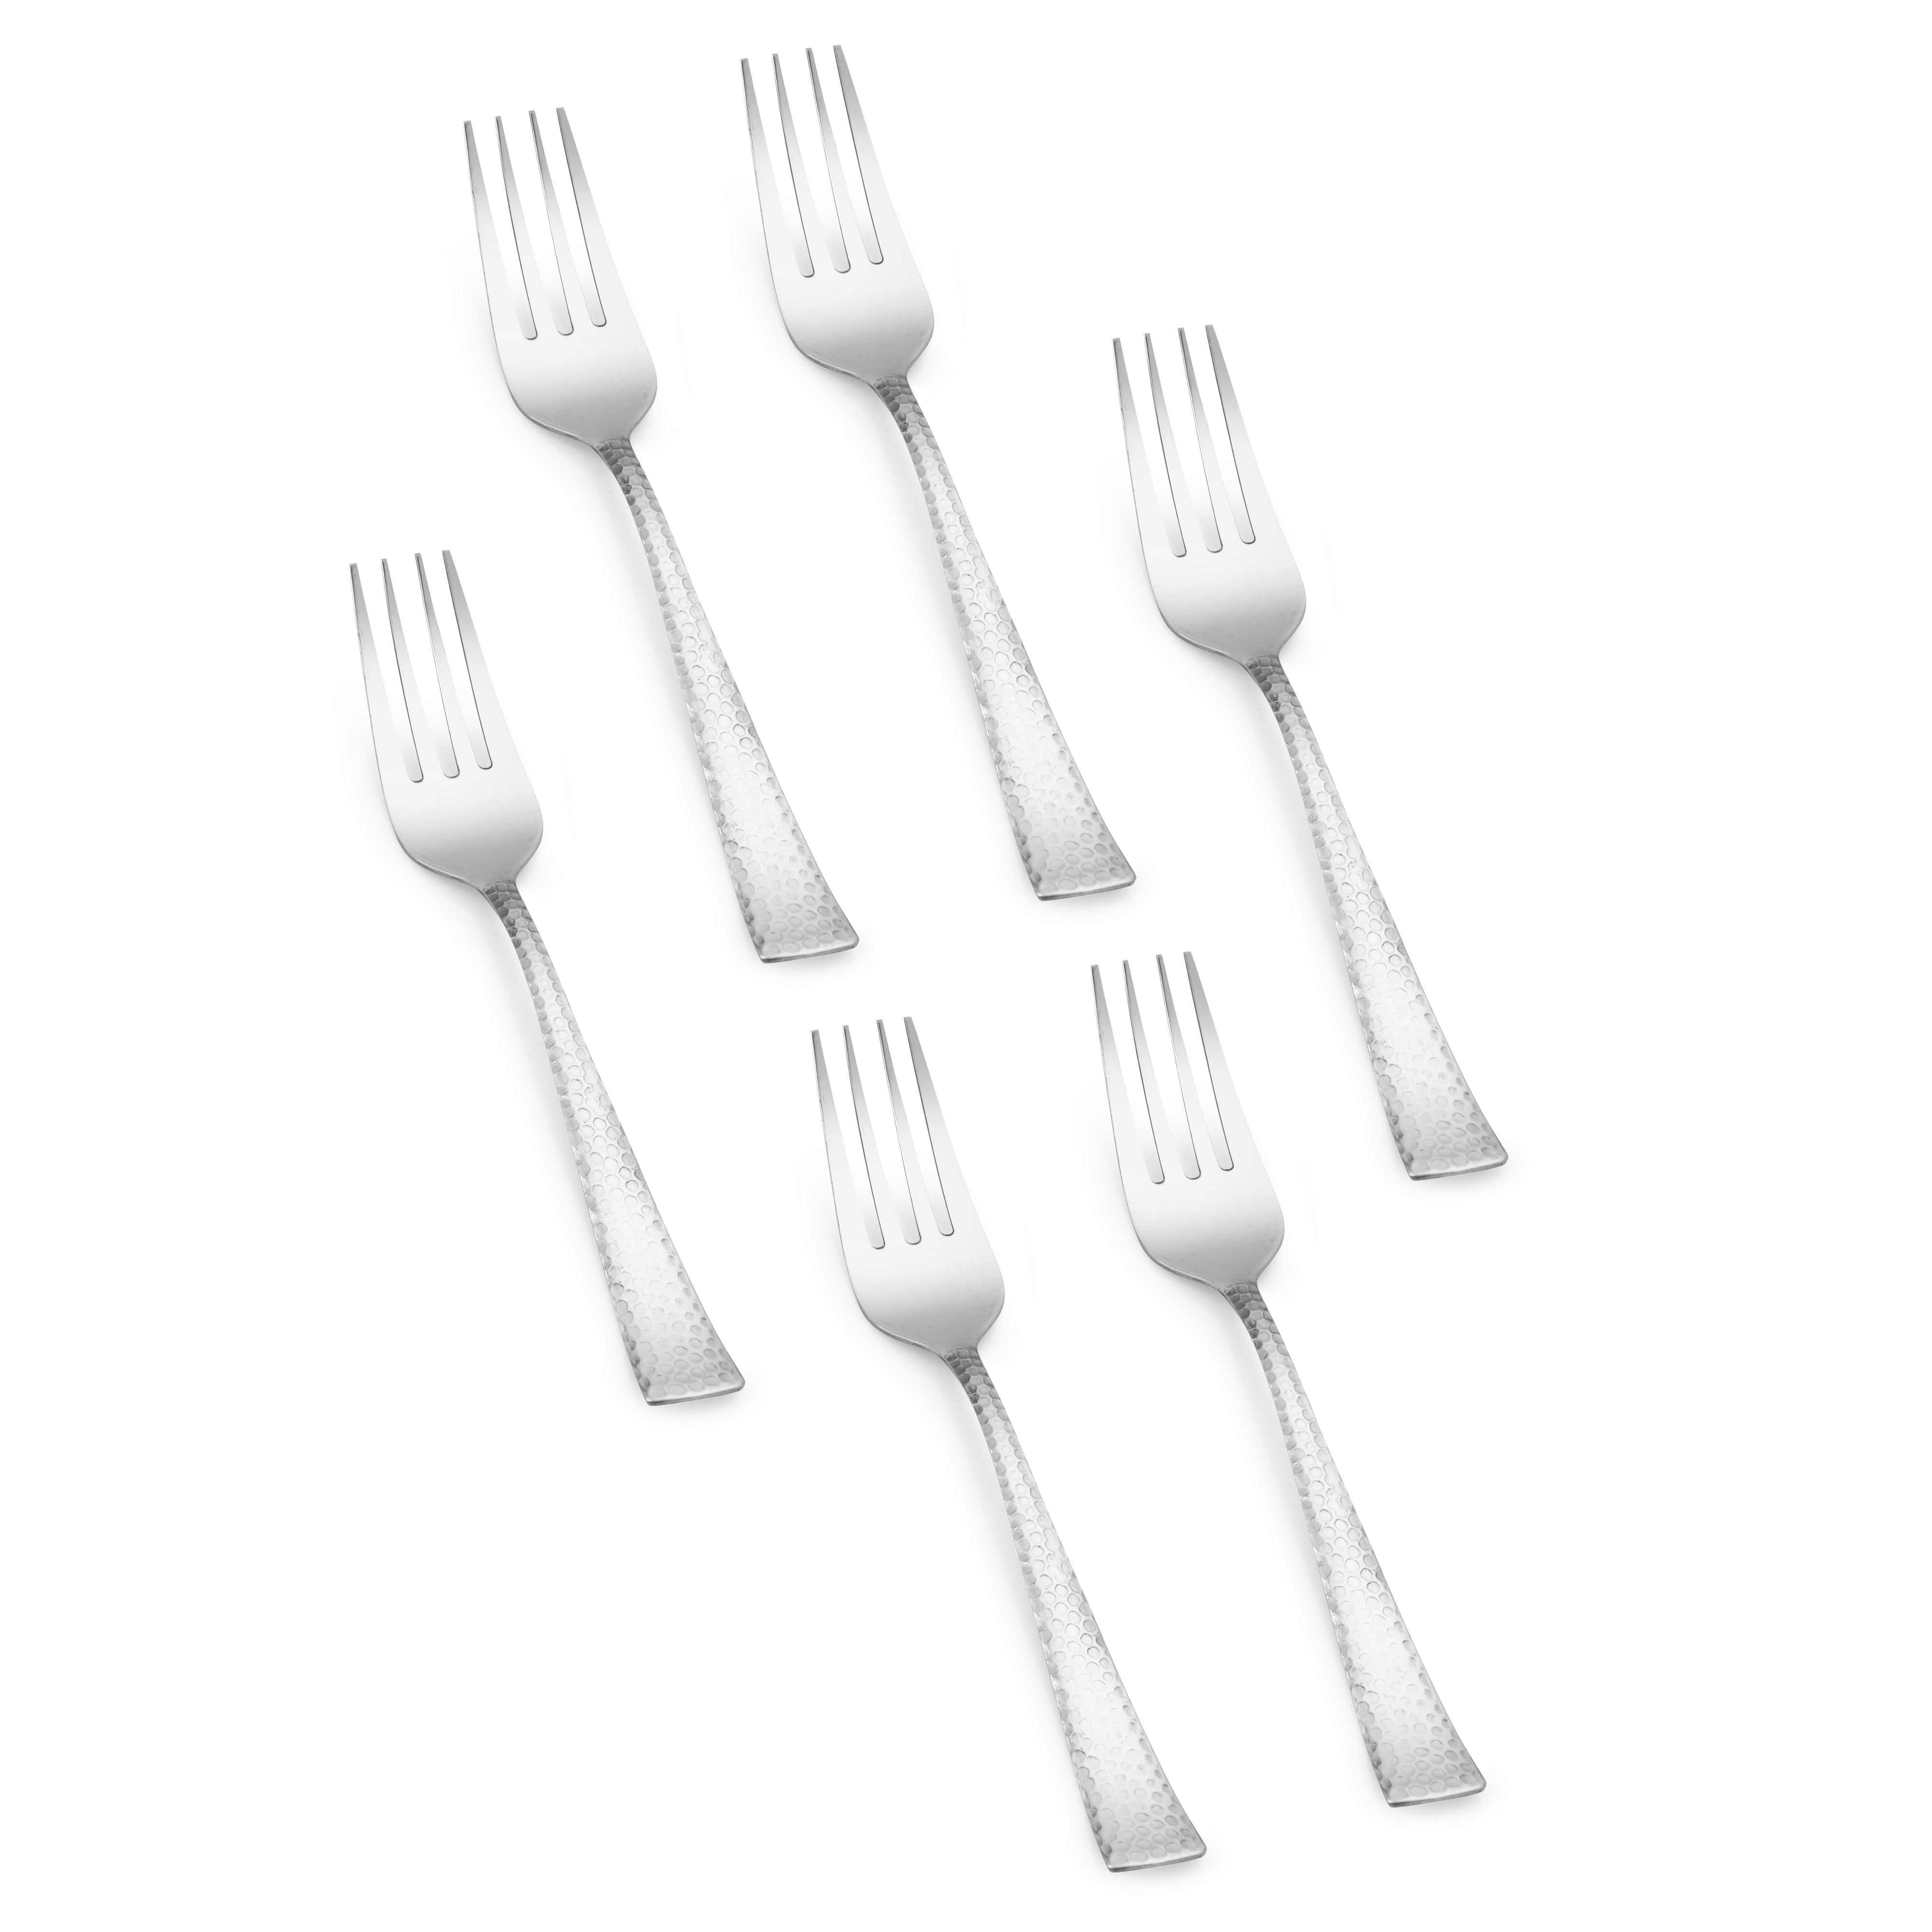 Arias by Lara Dutta Vintage Dinner Fork Set of 6 (Silver)